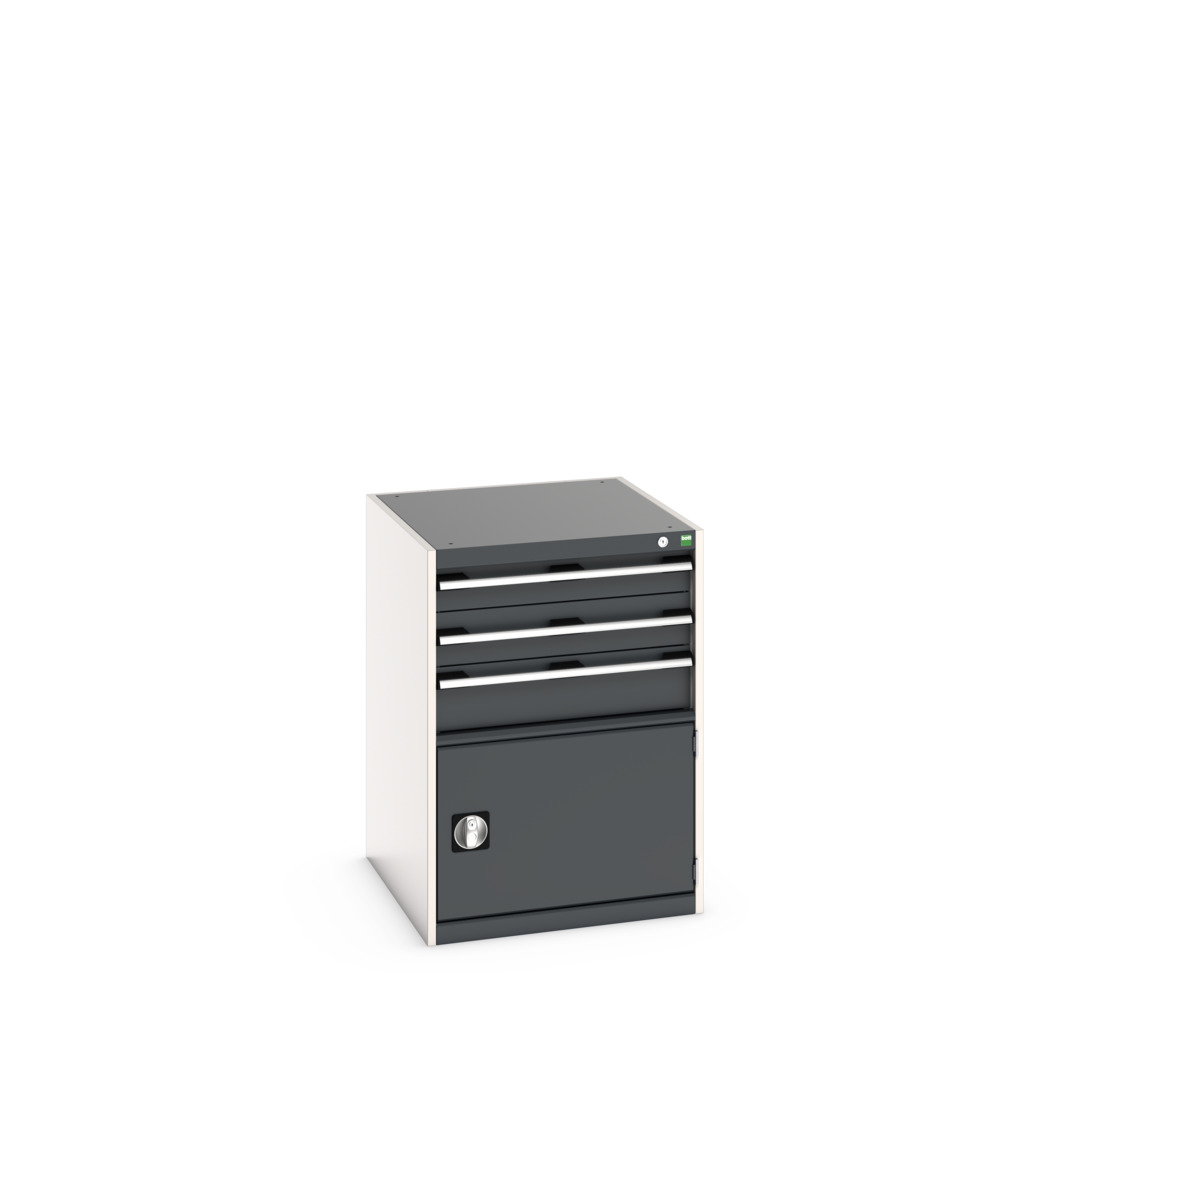 40027104. - cubio drawer-door cabinet